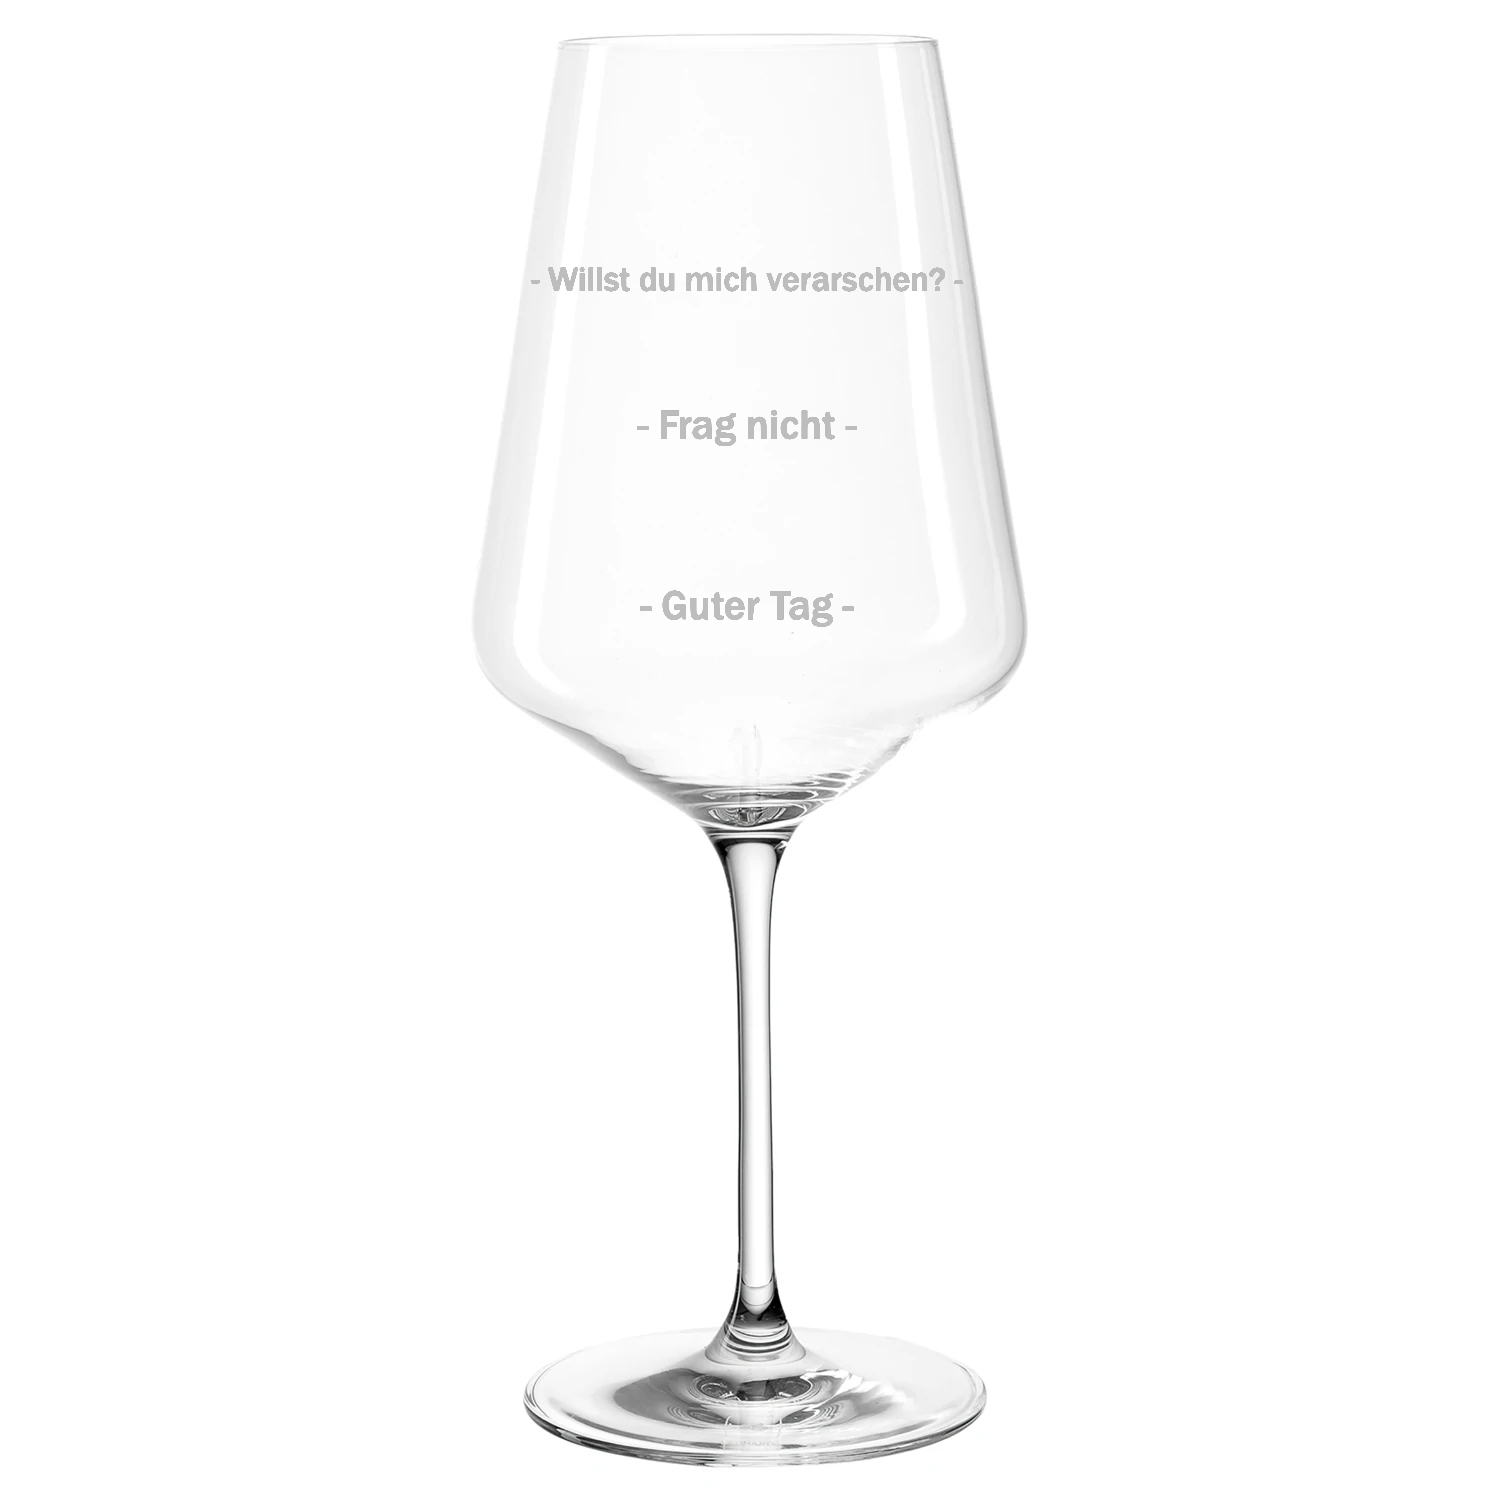 FRAG NICHT - Premium Weinglas